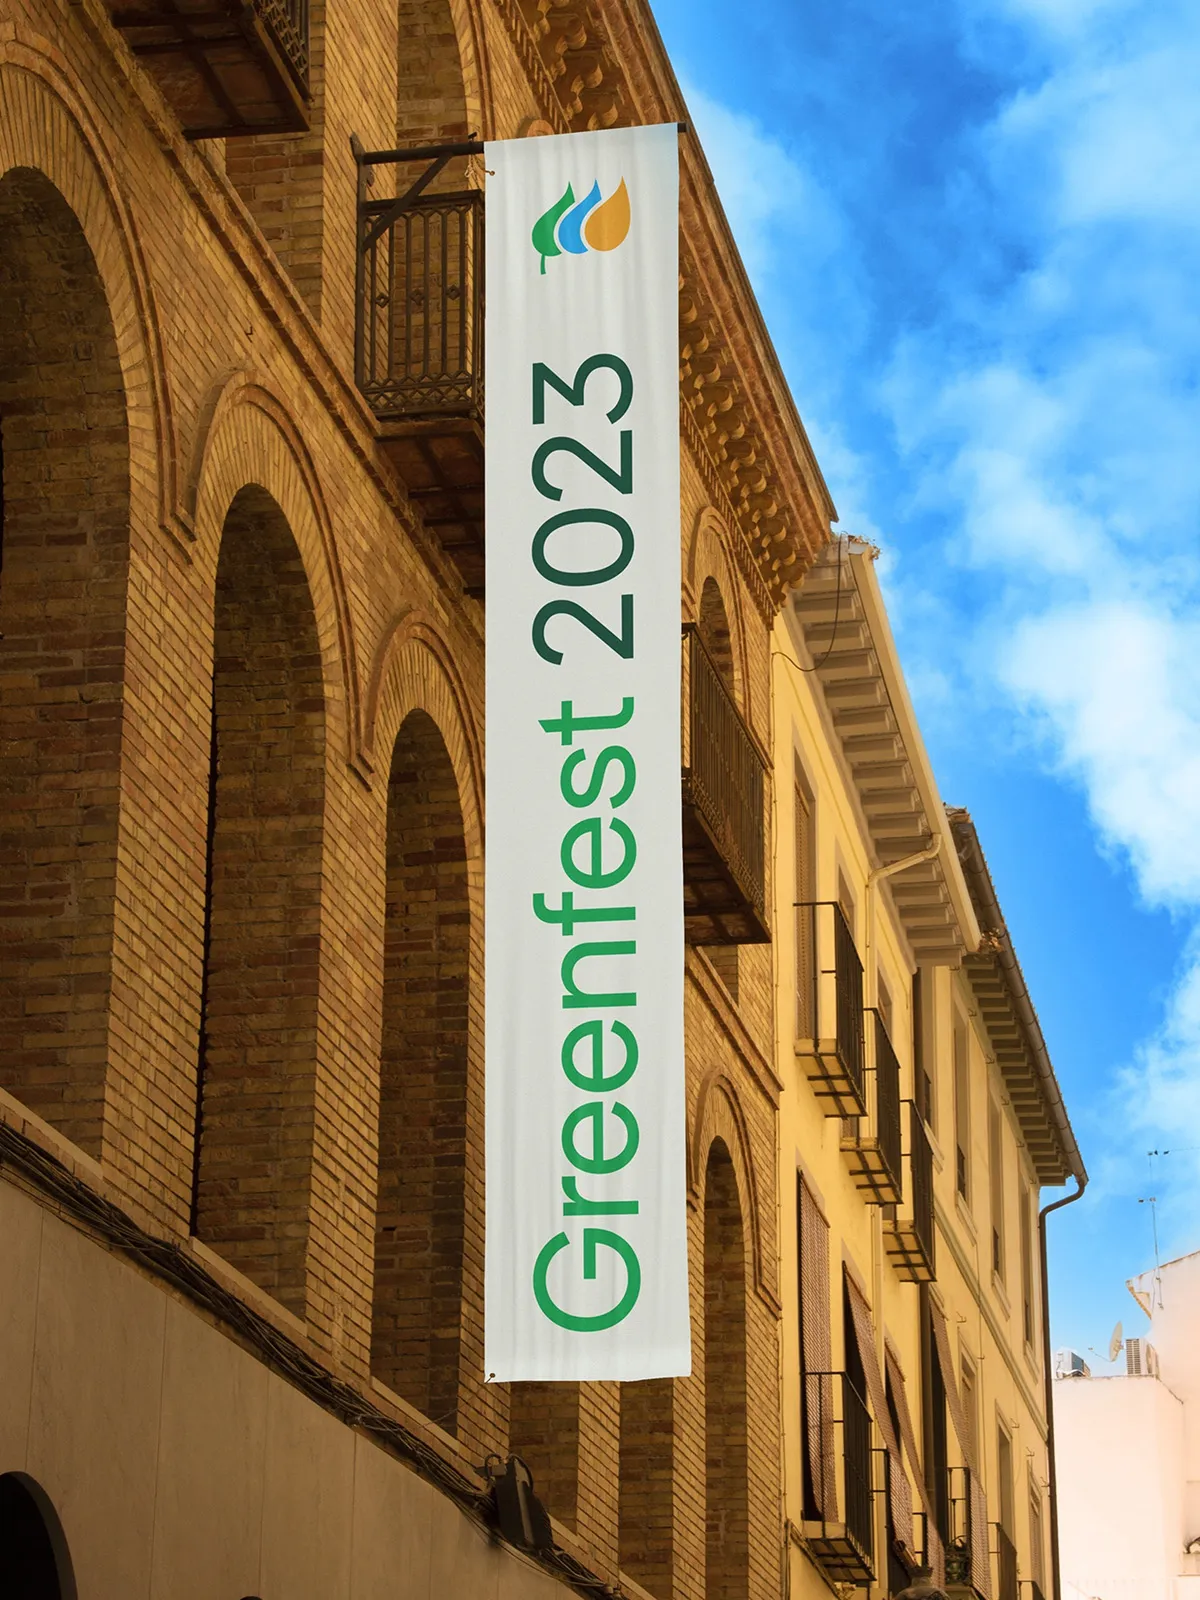 Edificio con lona y leyenda "Greenfest 2023"